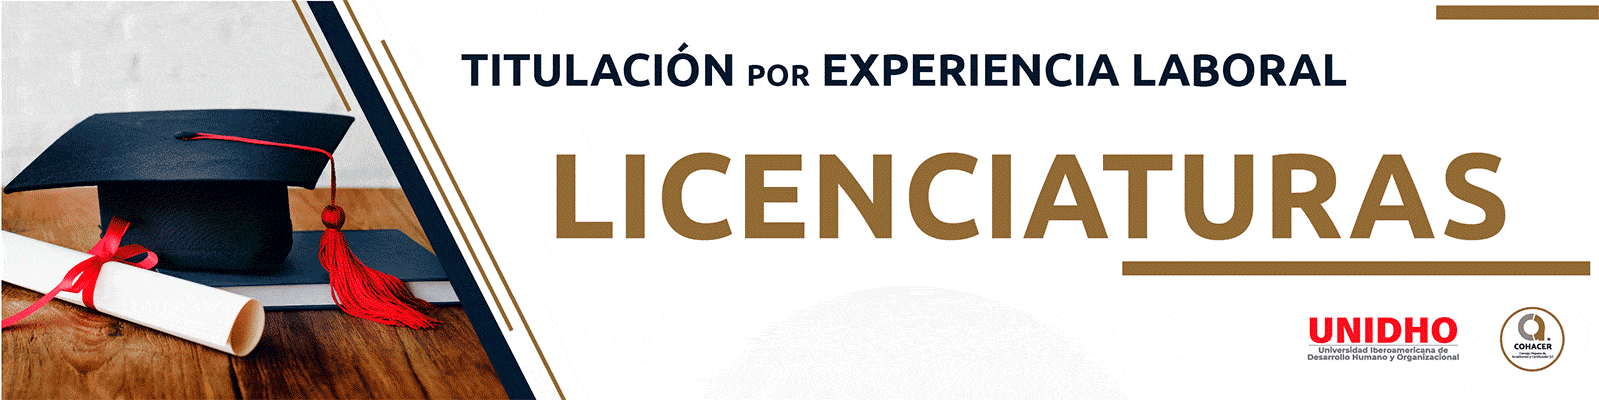 licenciaturas_acuerdo_286_SEP_titulacion_experiencia_laboral_cohacer_unidho